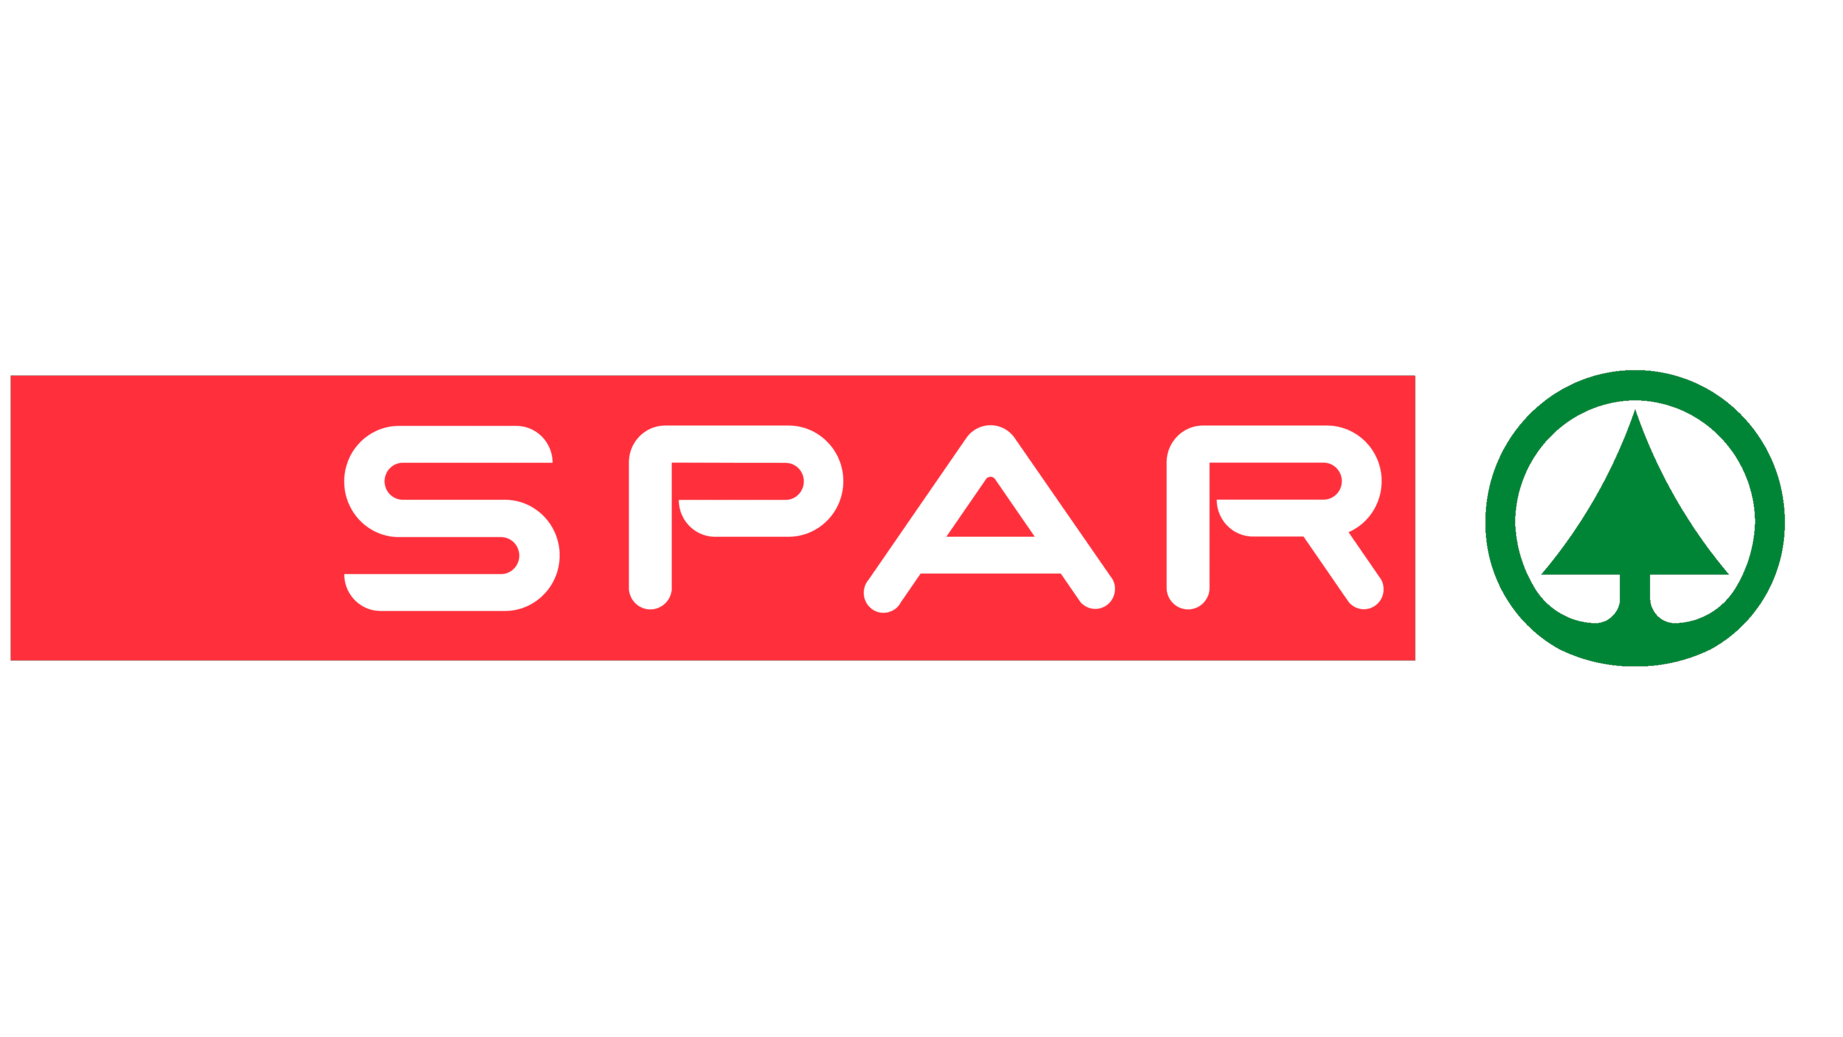 Spar sign